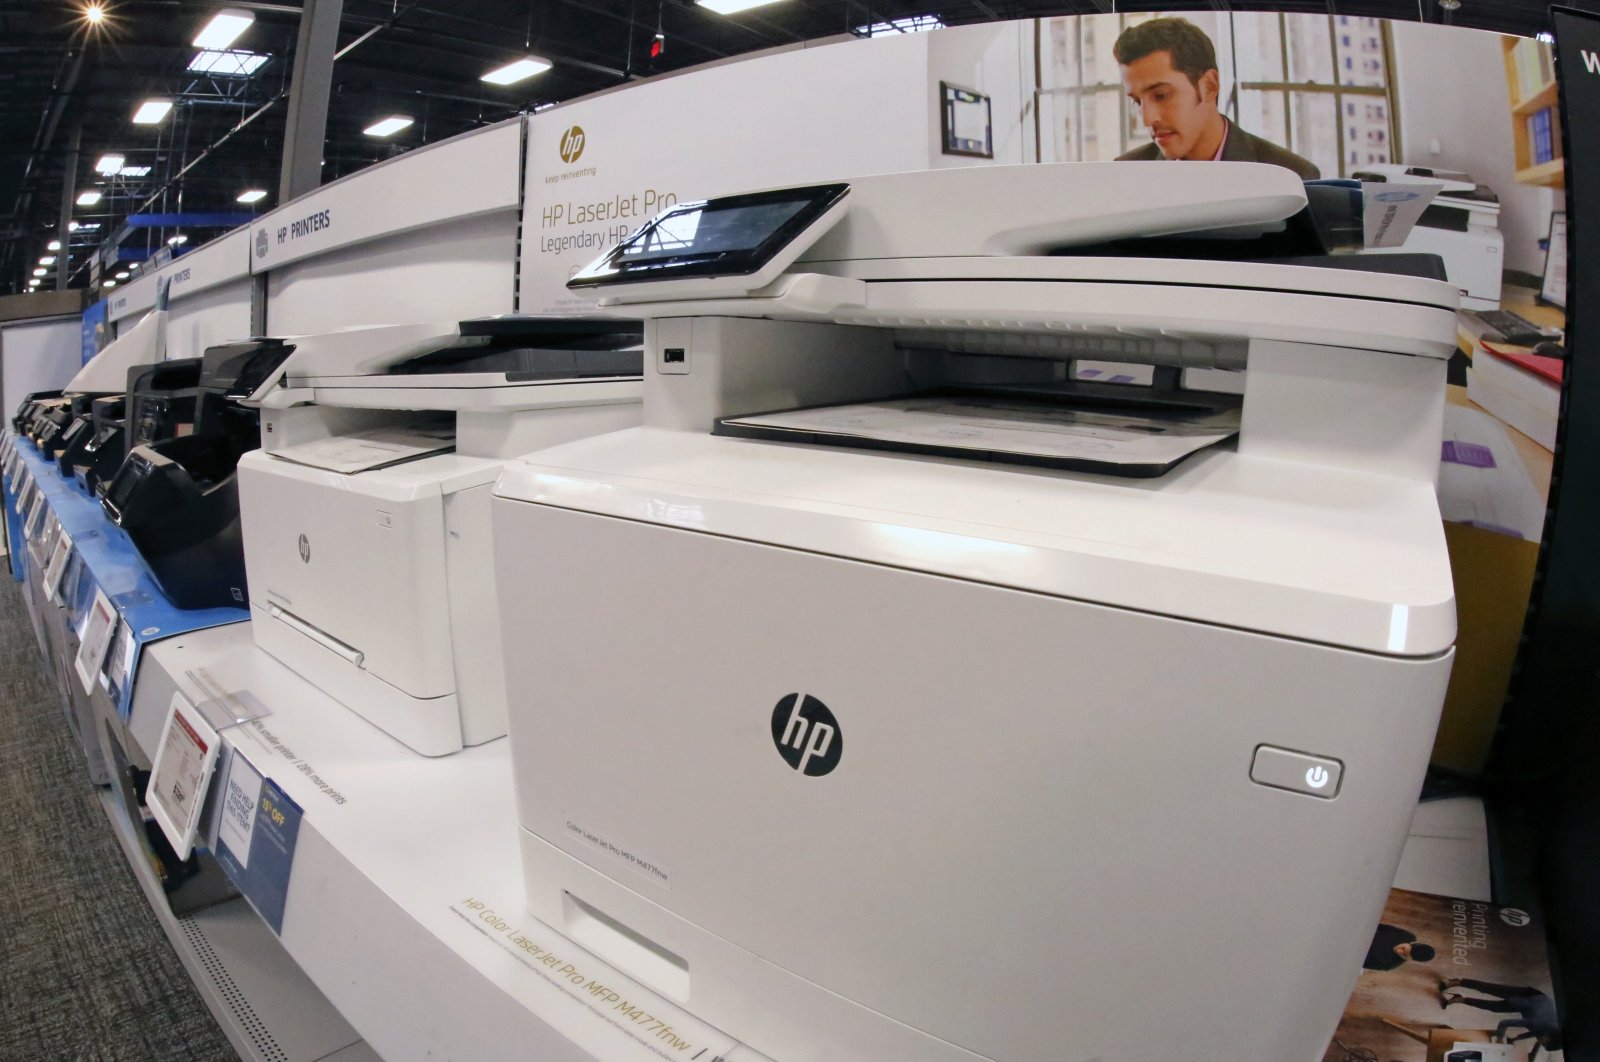 Hewlett-Packard printers on display in a Best Buy store in Pittsburgh, Feb. 22, 2018. (AP Photo)